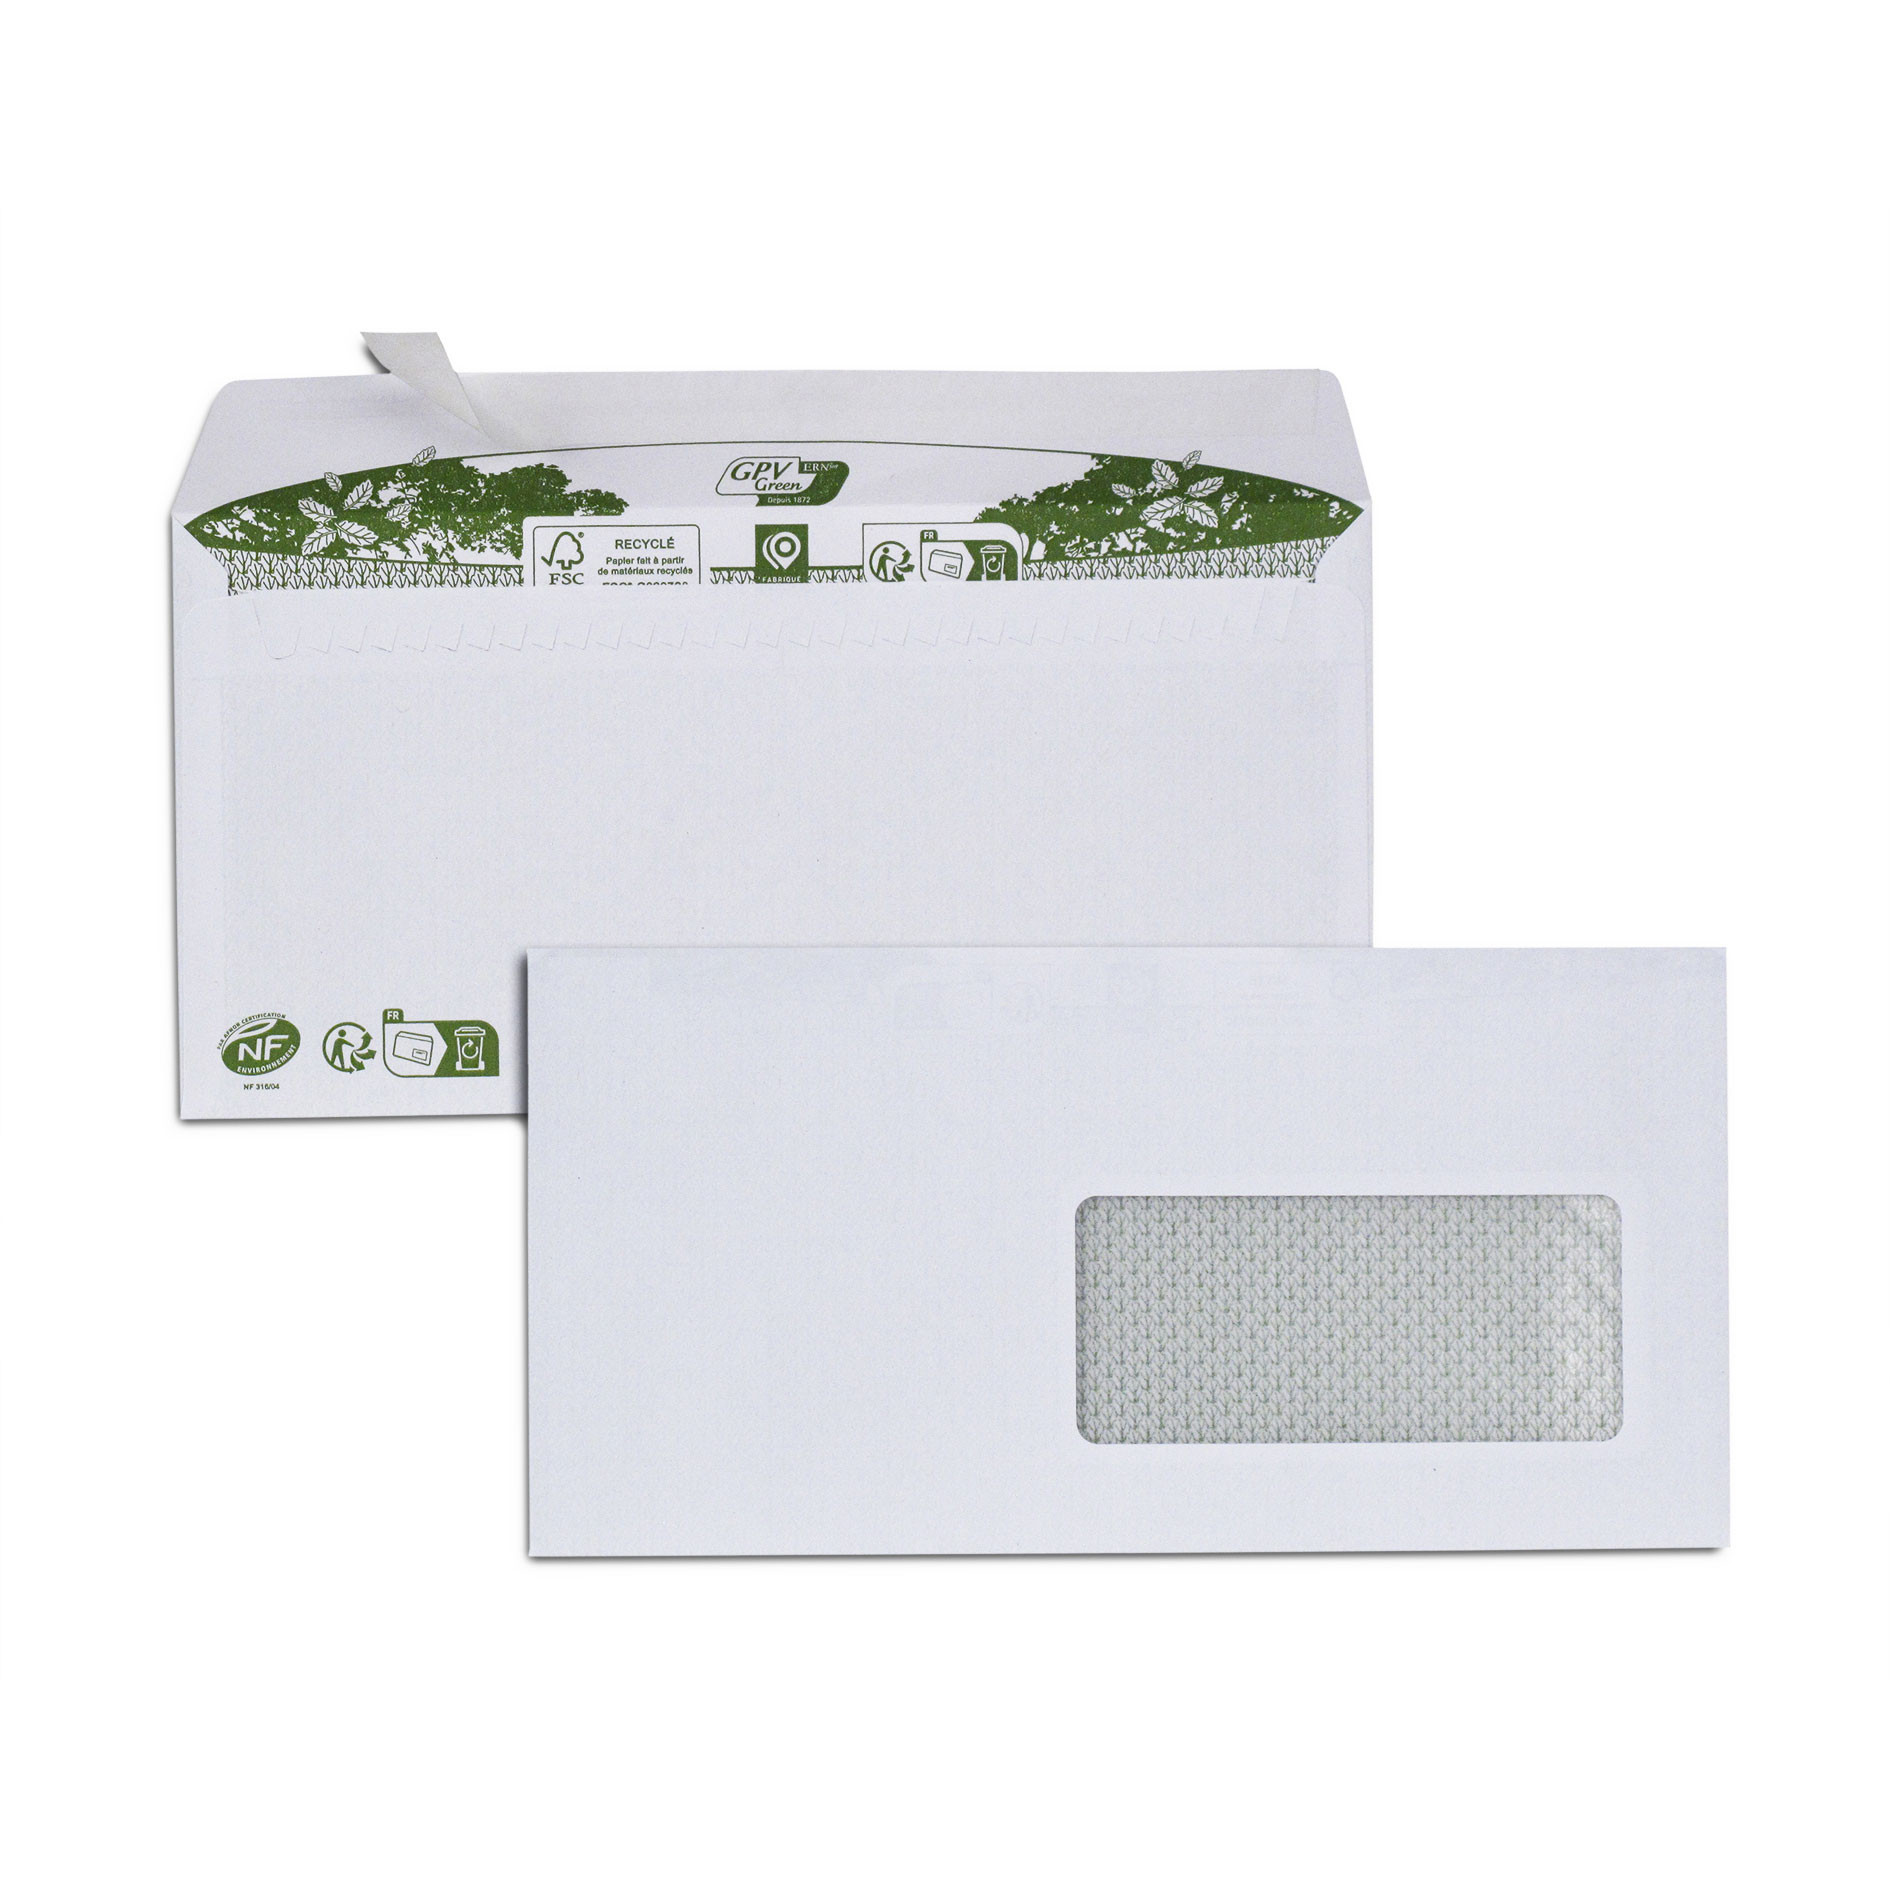 Boite de 500 enveloppes extra blanches 100% recyclées DL 110x220 80 g/m² fenêtre 45x100 bande de protection